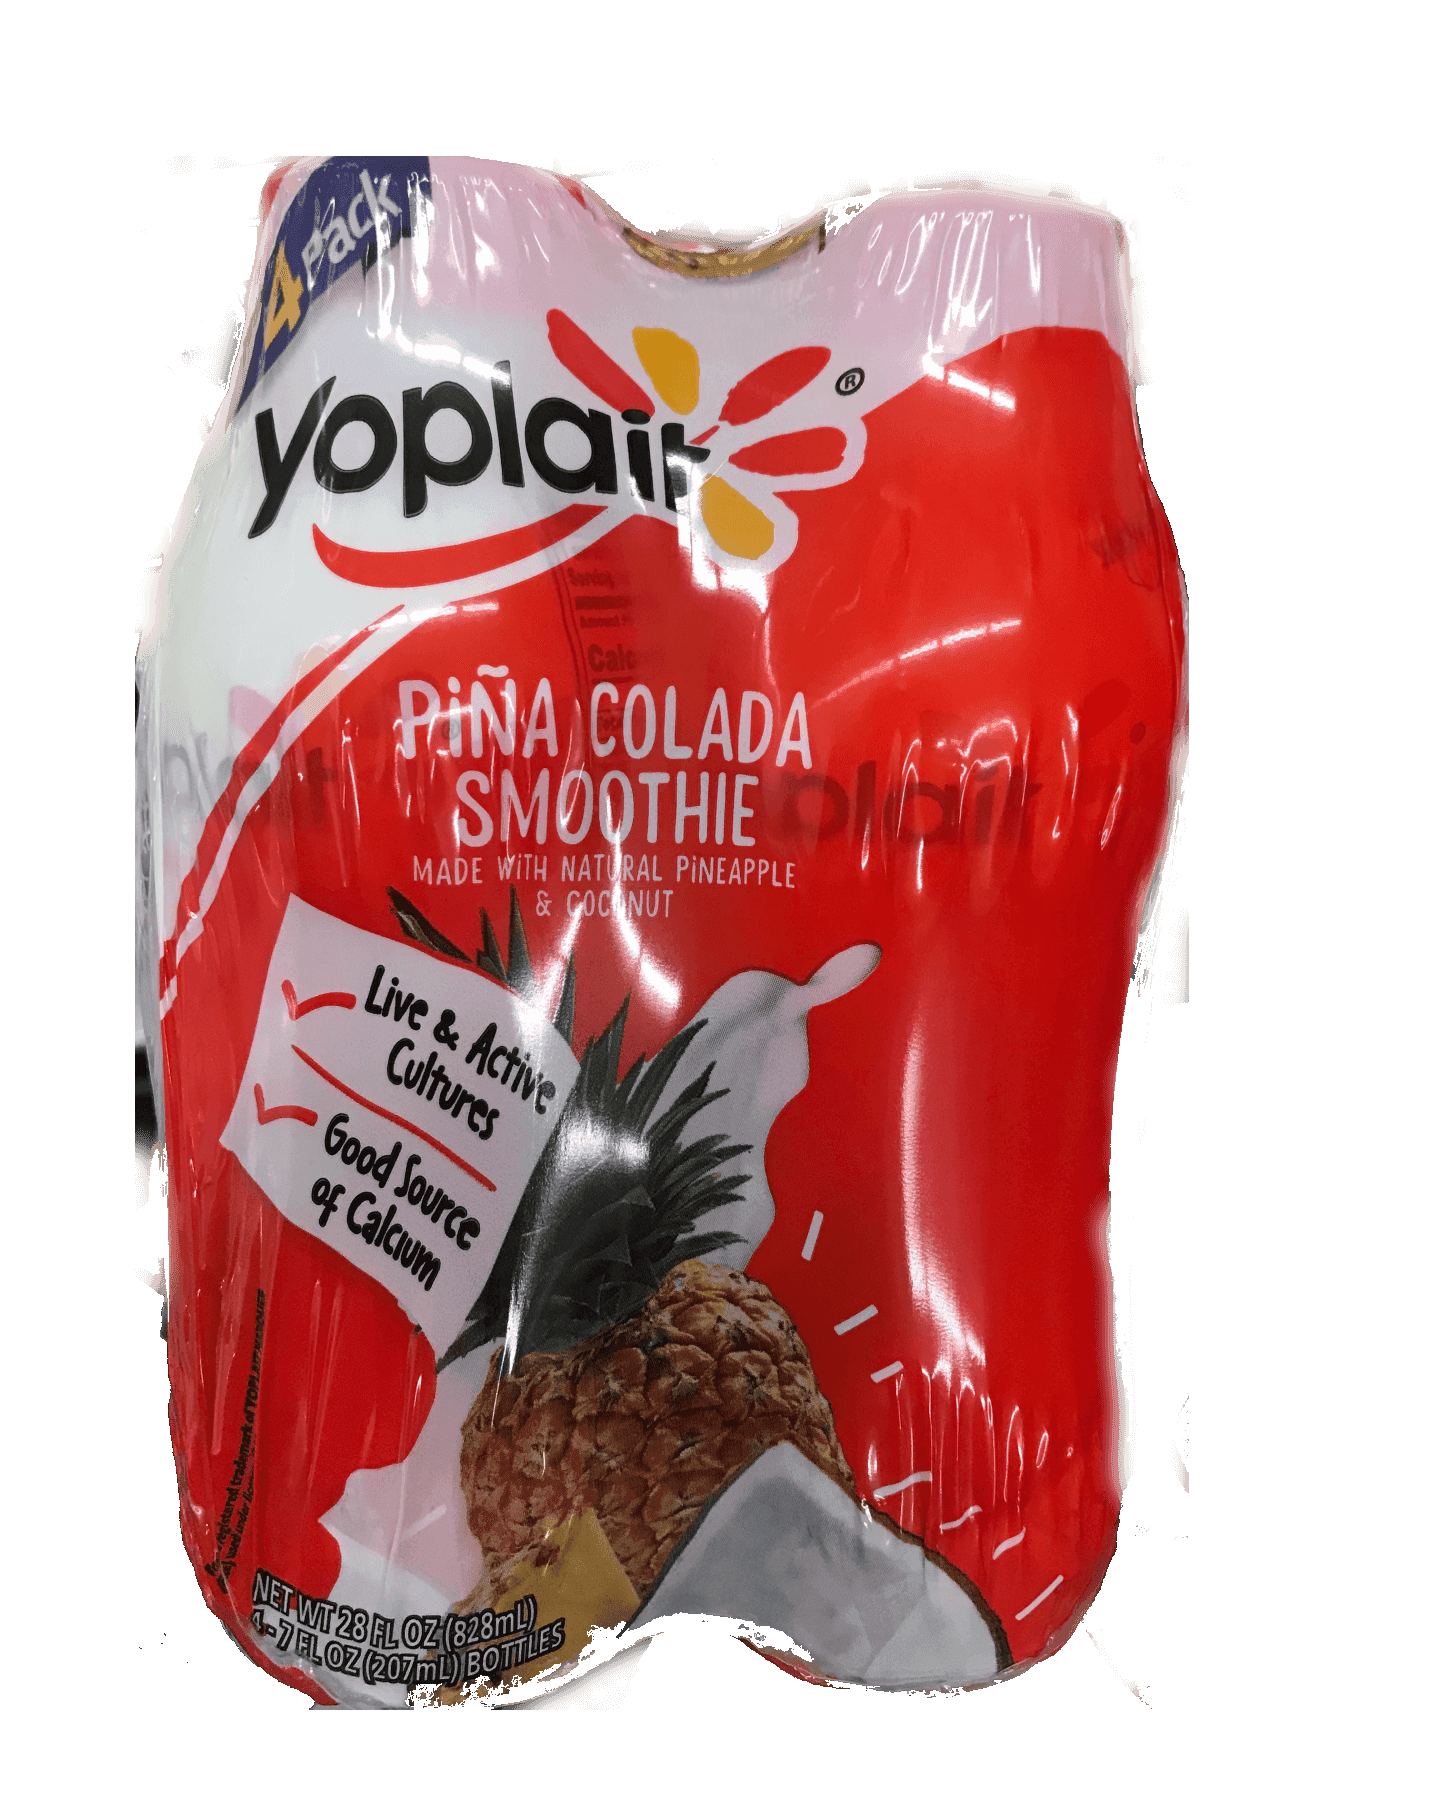 Yoplait - Piña Colada Smoothie 4Pack 7oz Bottles